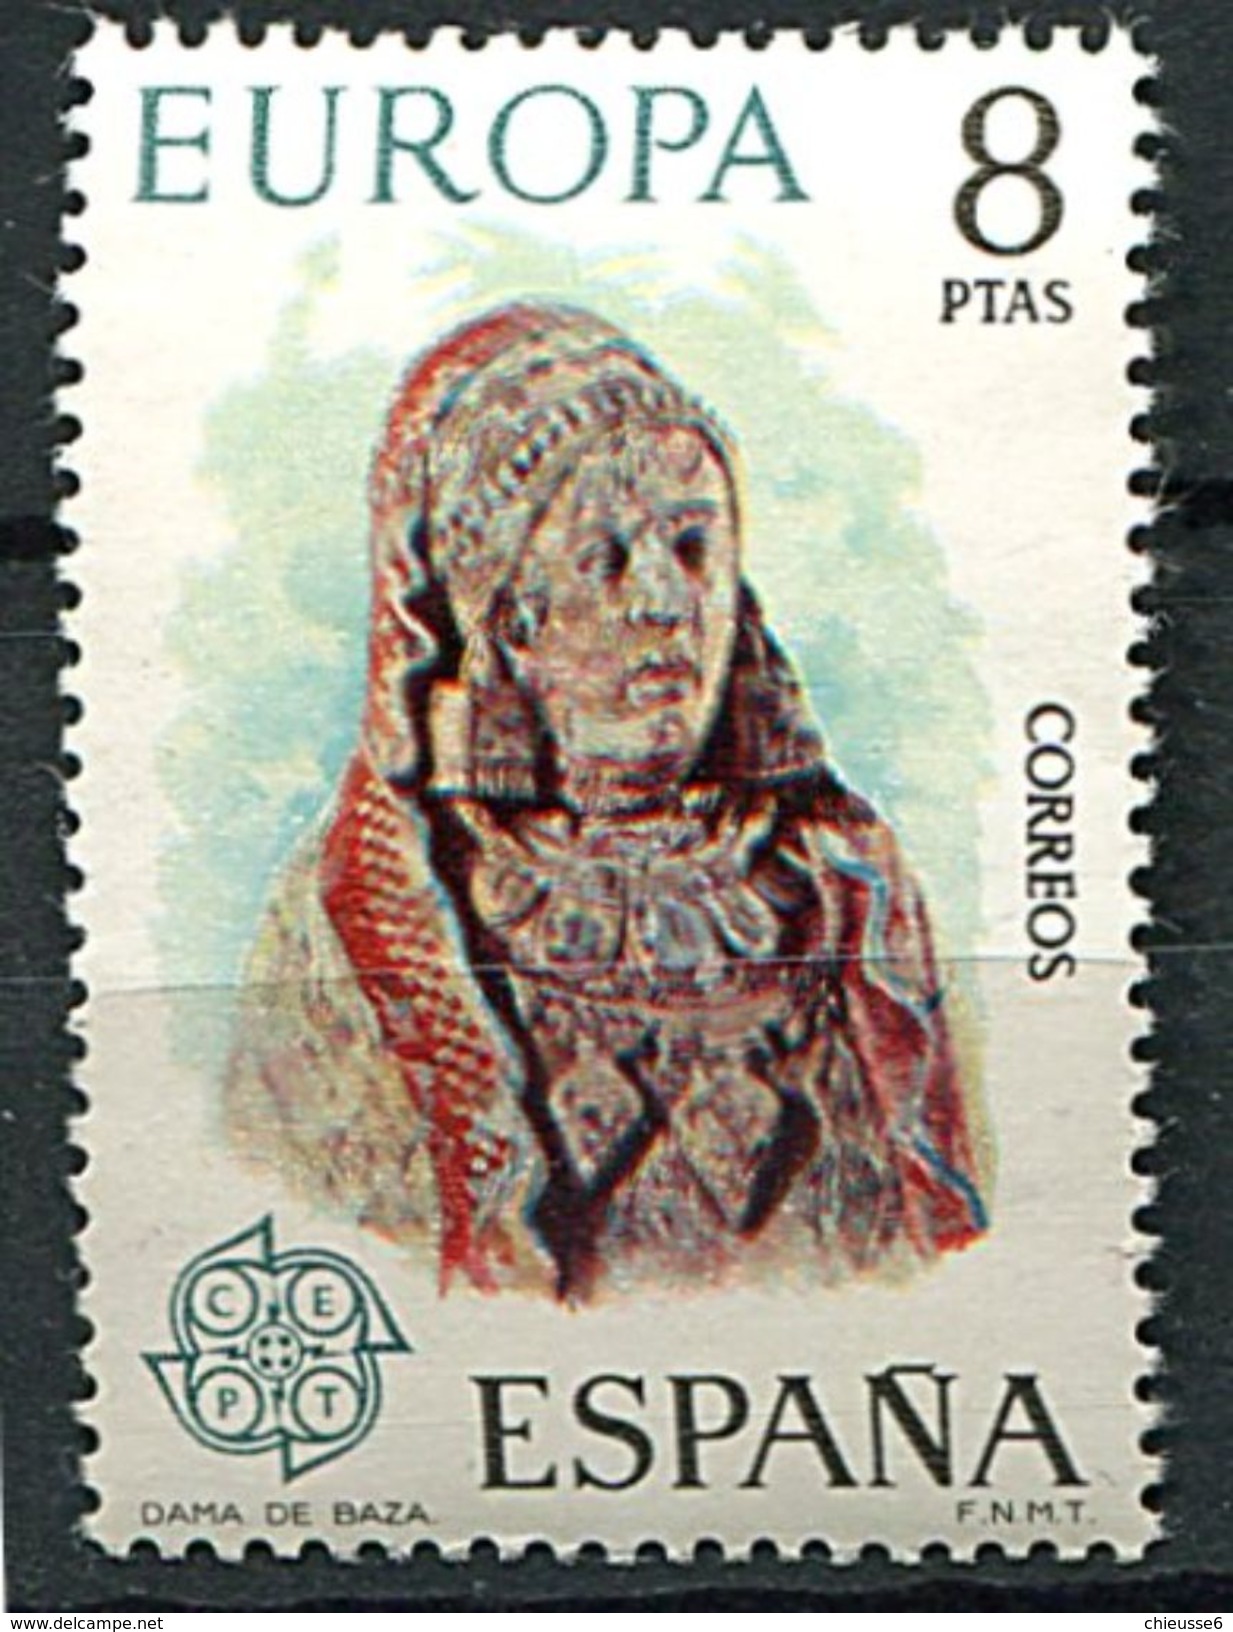 Espagne ** N° 1830 - Europa 1974 - 1974